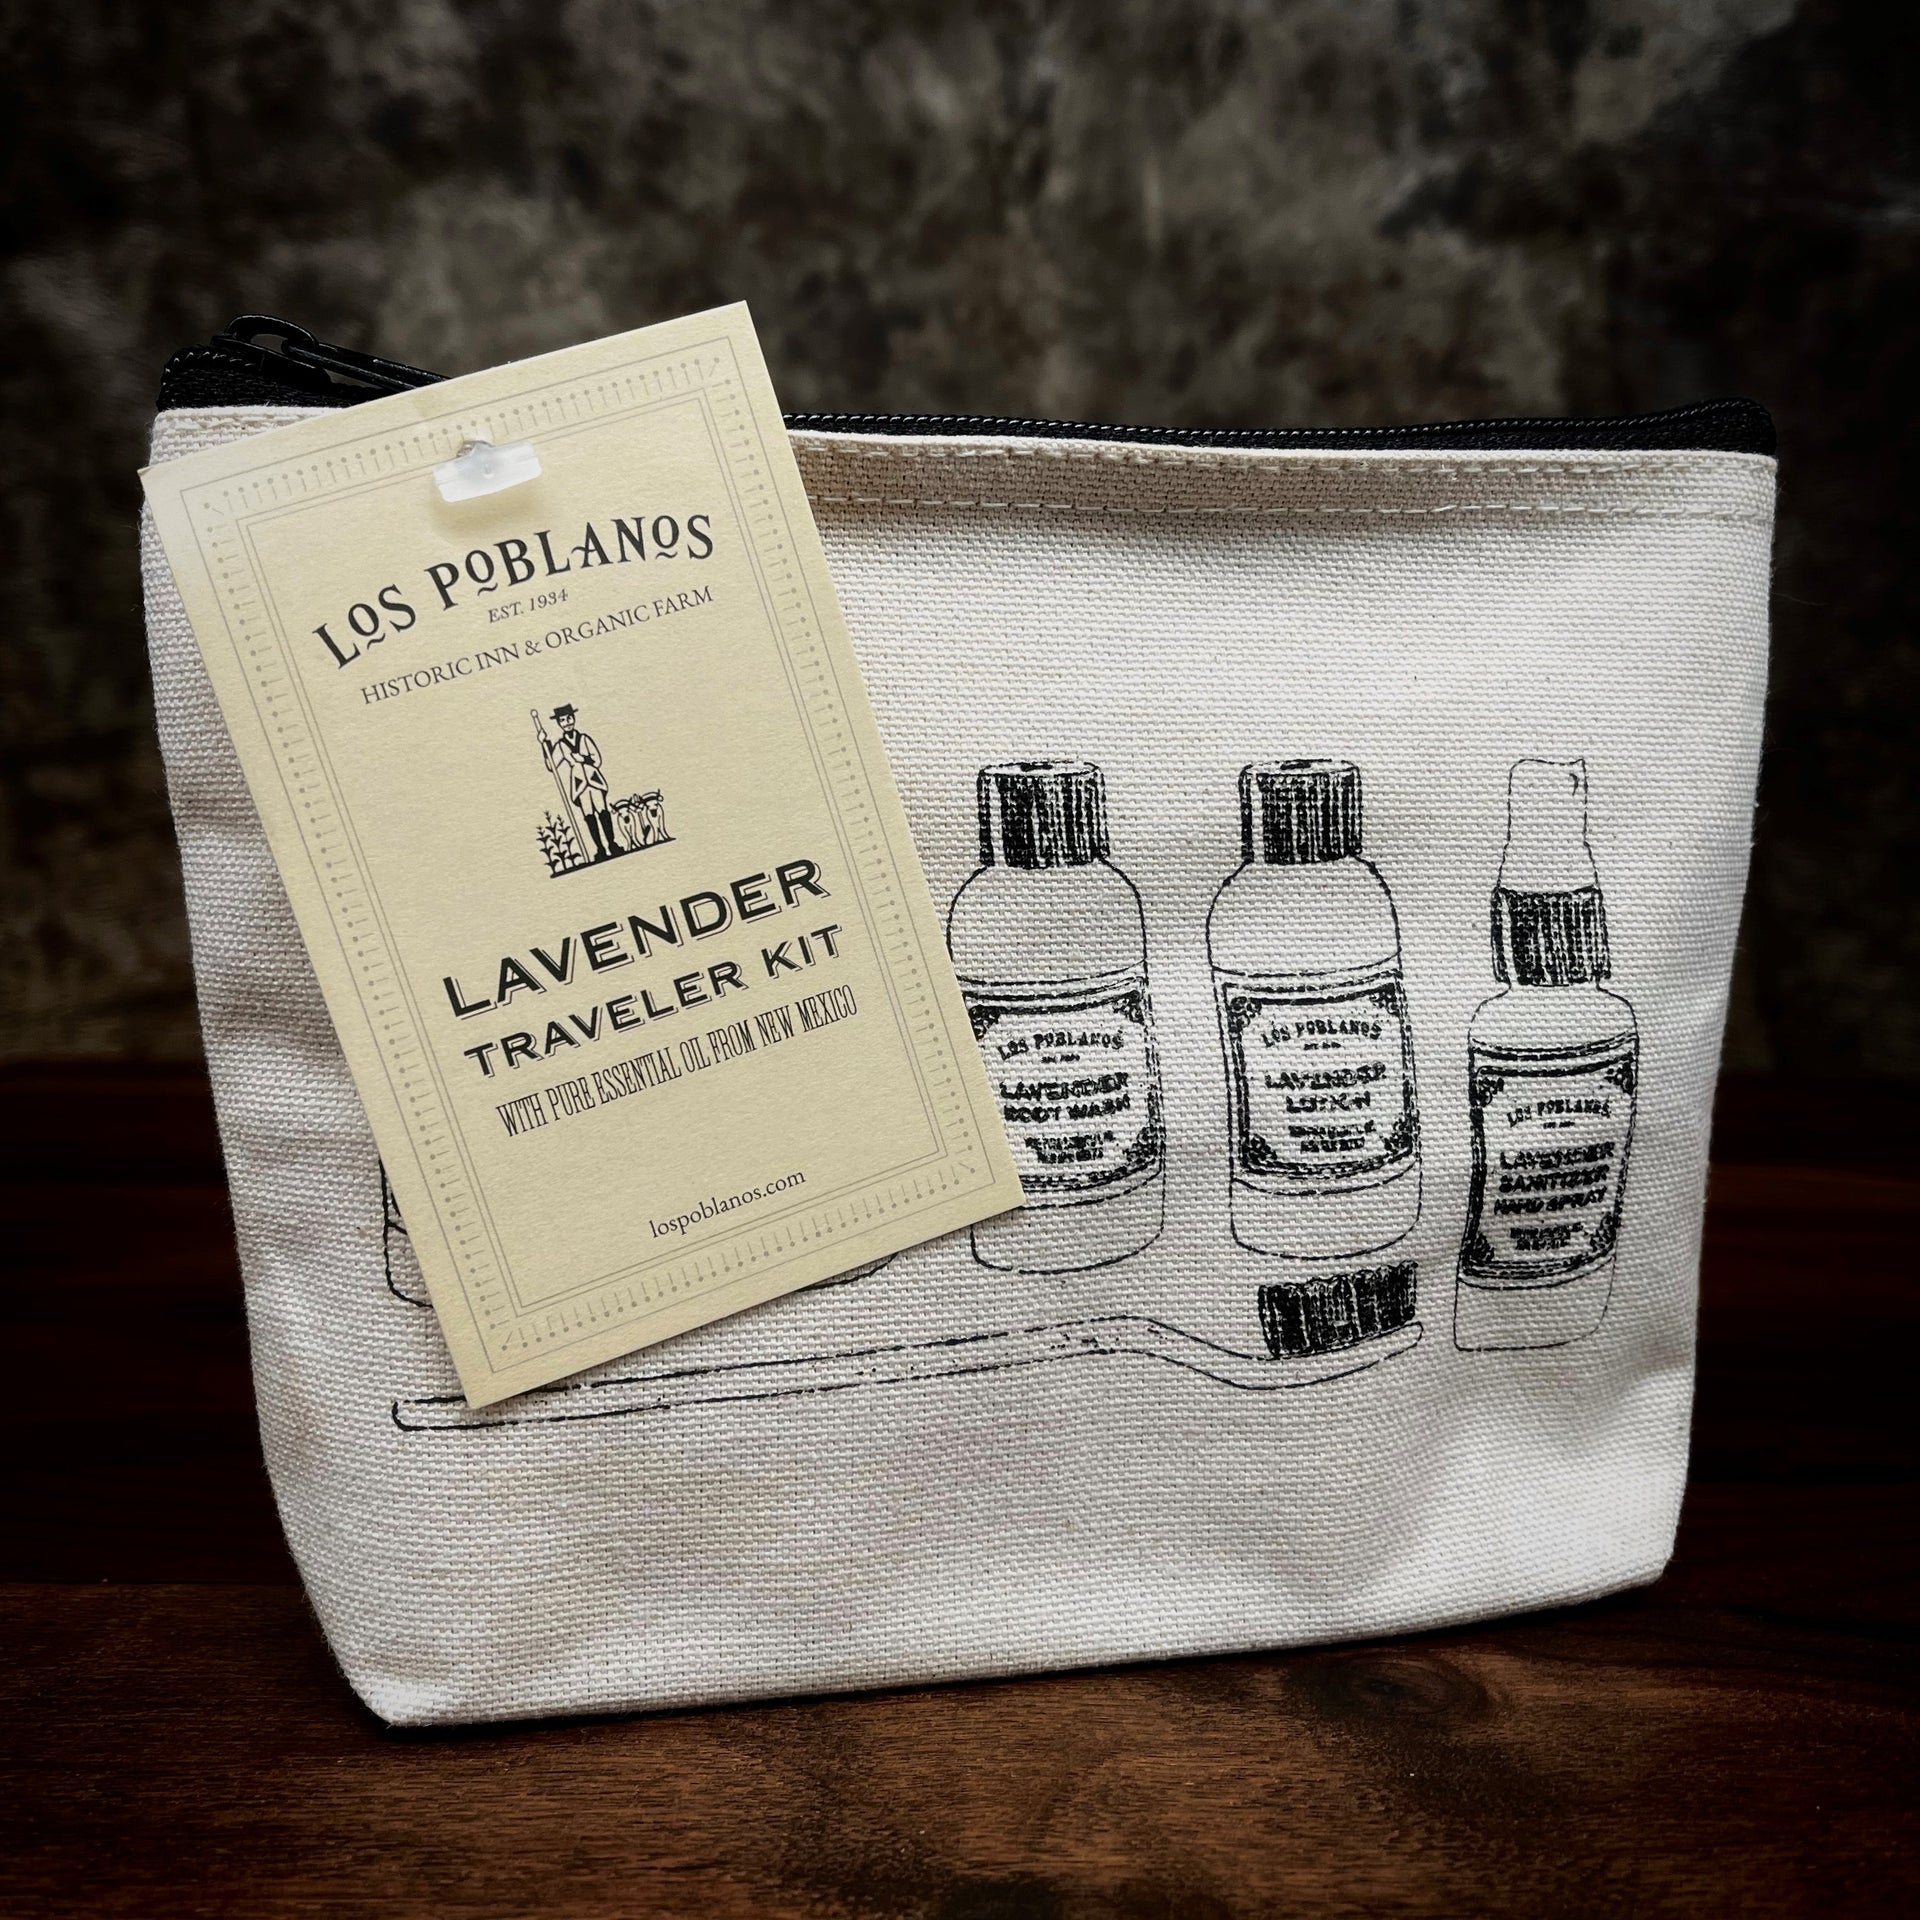 Los Poblanos Lavender Traveler Kit